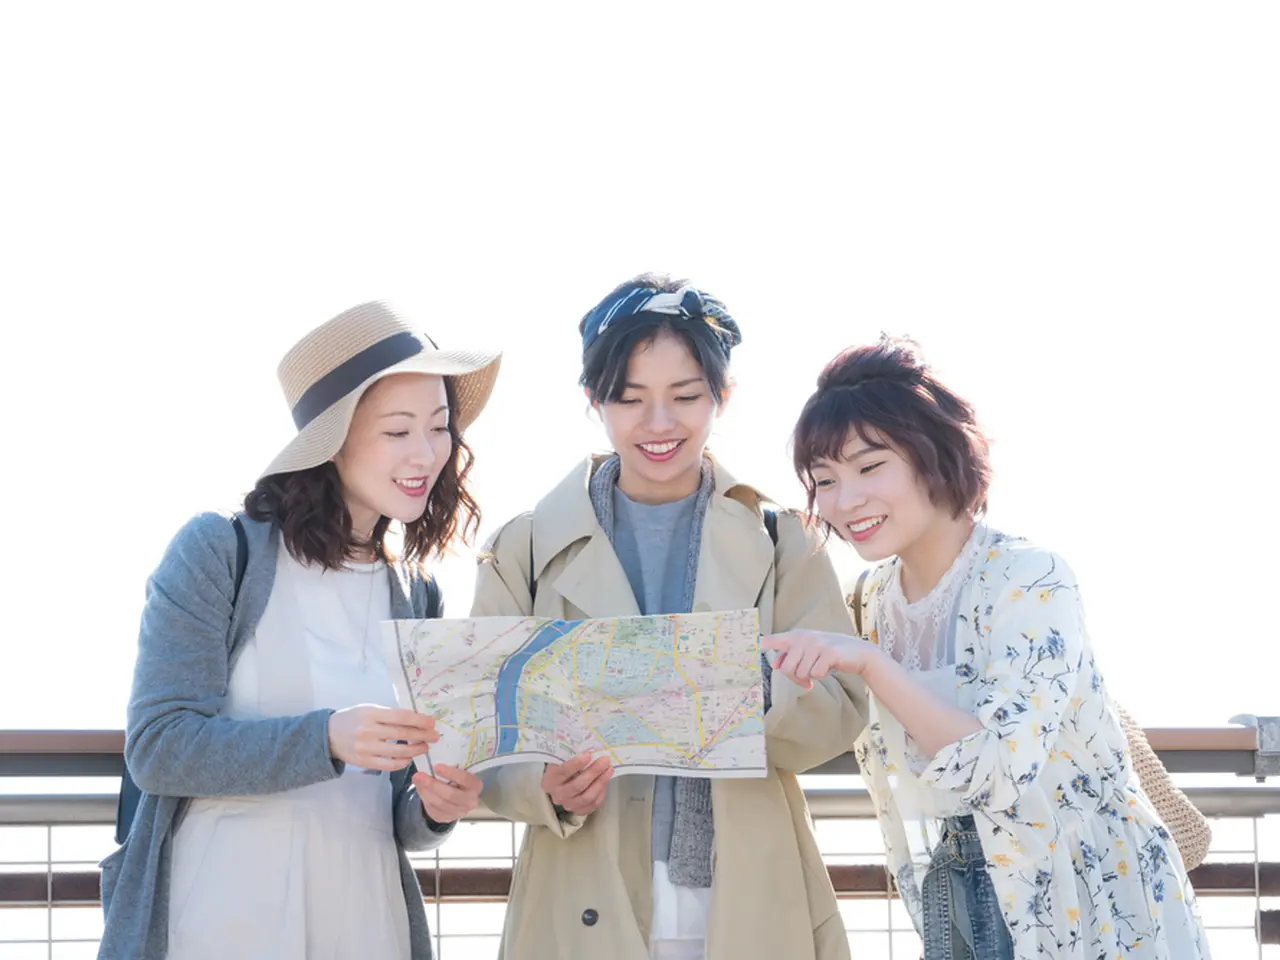 東京女子旅 女子旅で外せないおすすめの観光スポット30選 Holiday ホリデー